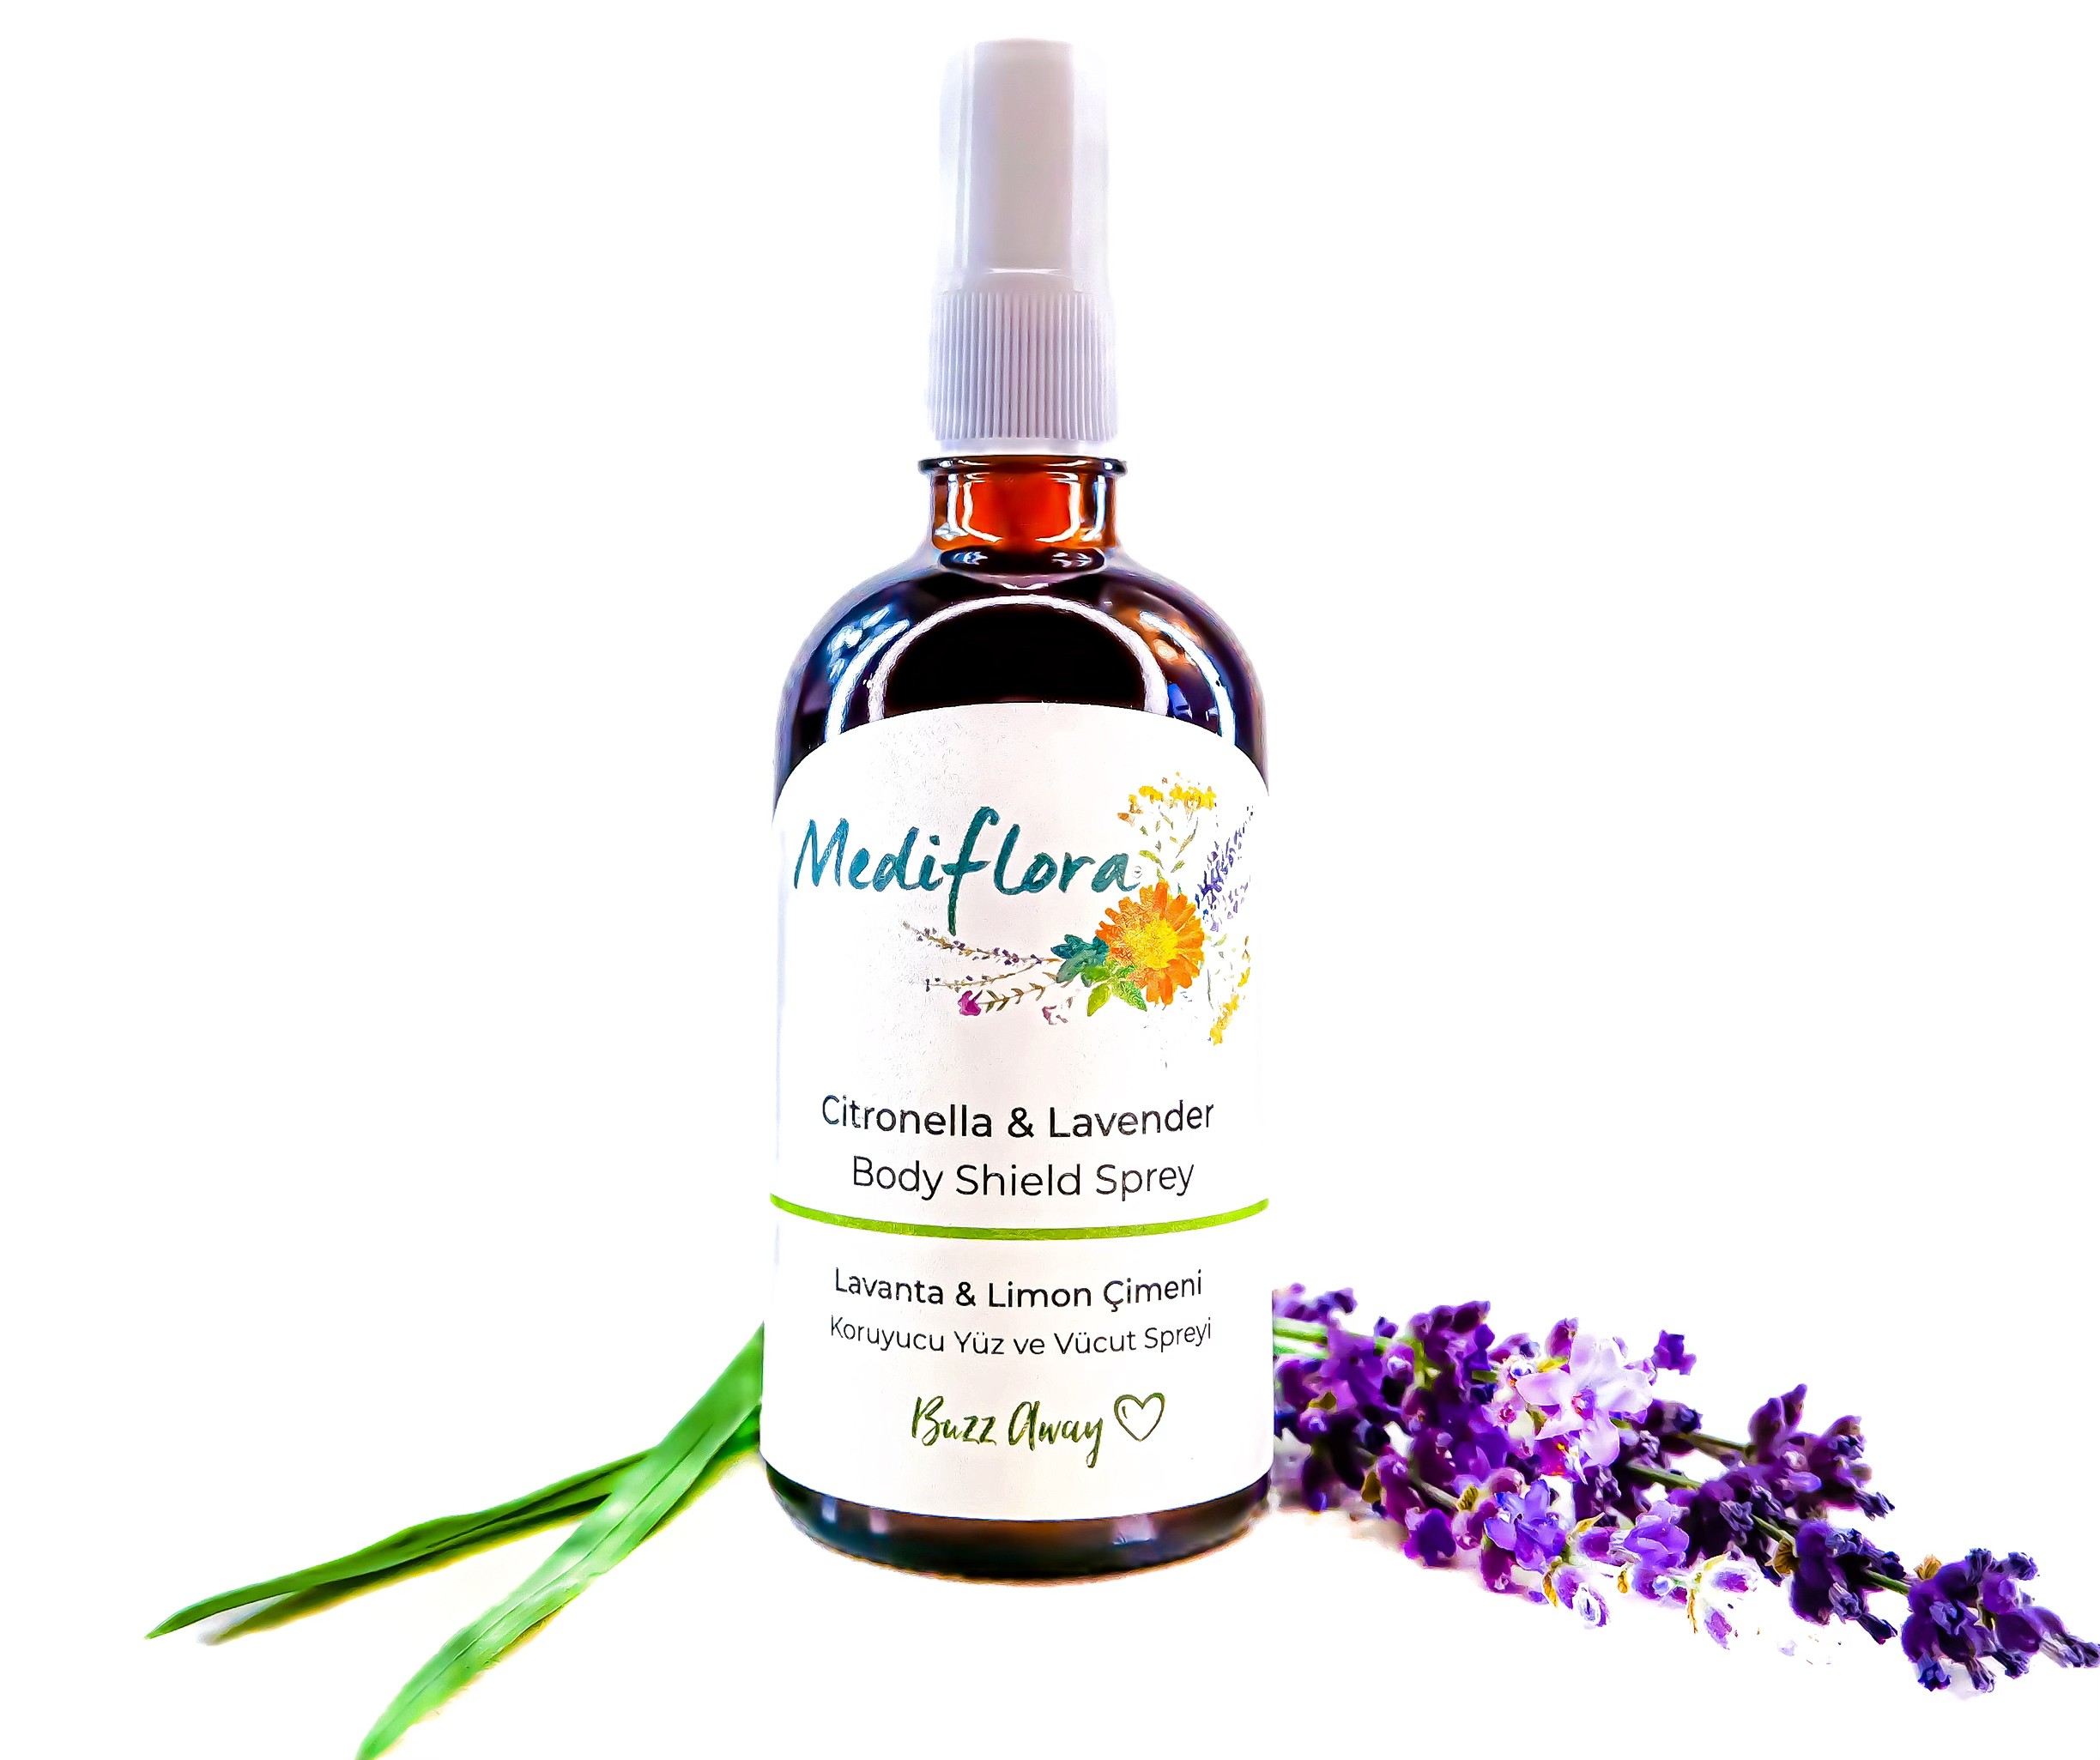 Face and Body Shield Spray – Citronella & Lavender